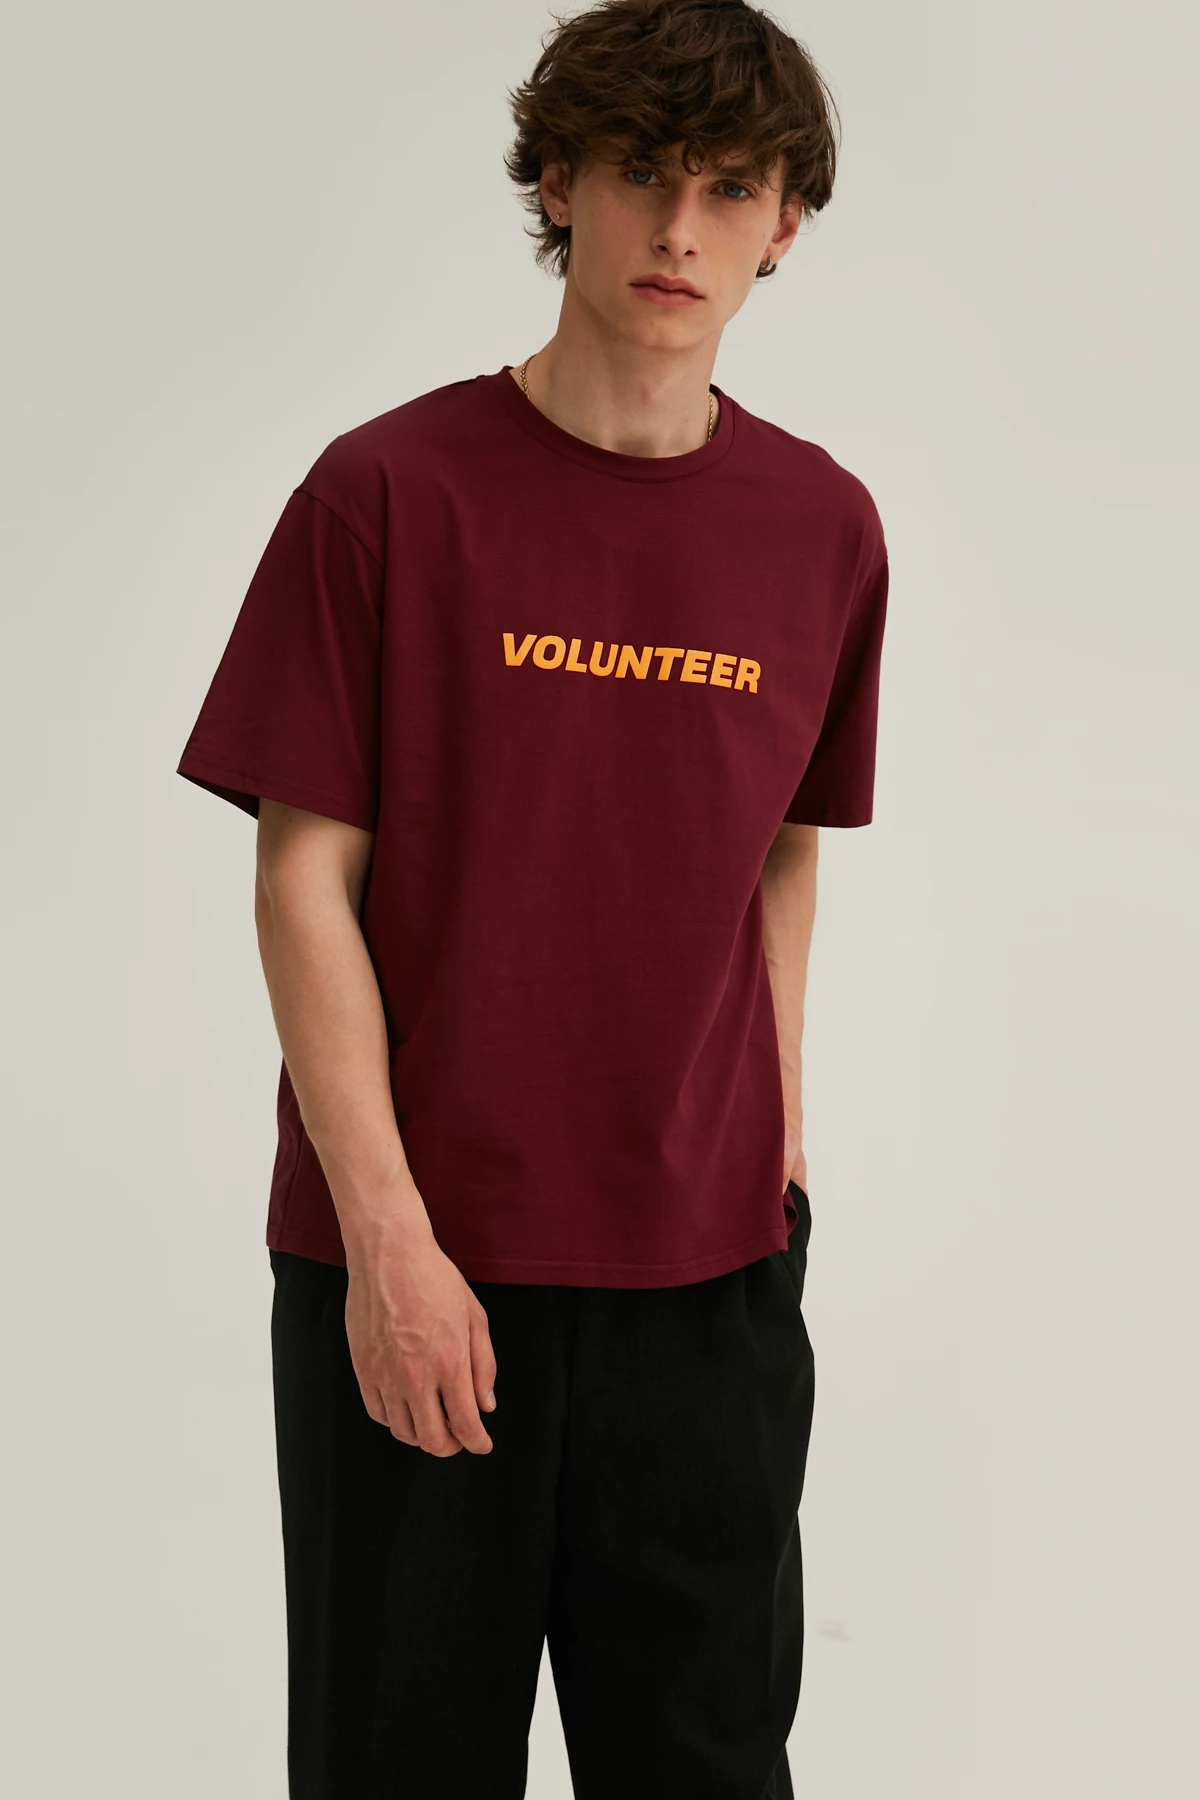 Бордова унісекс-футболка з написом "Volunteer" з трикотажу, фото 3